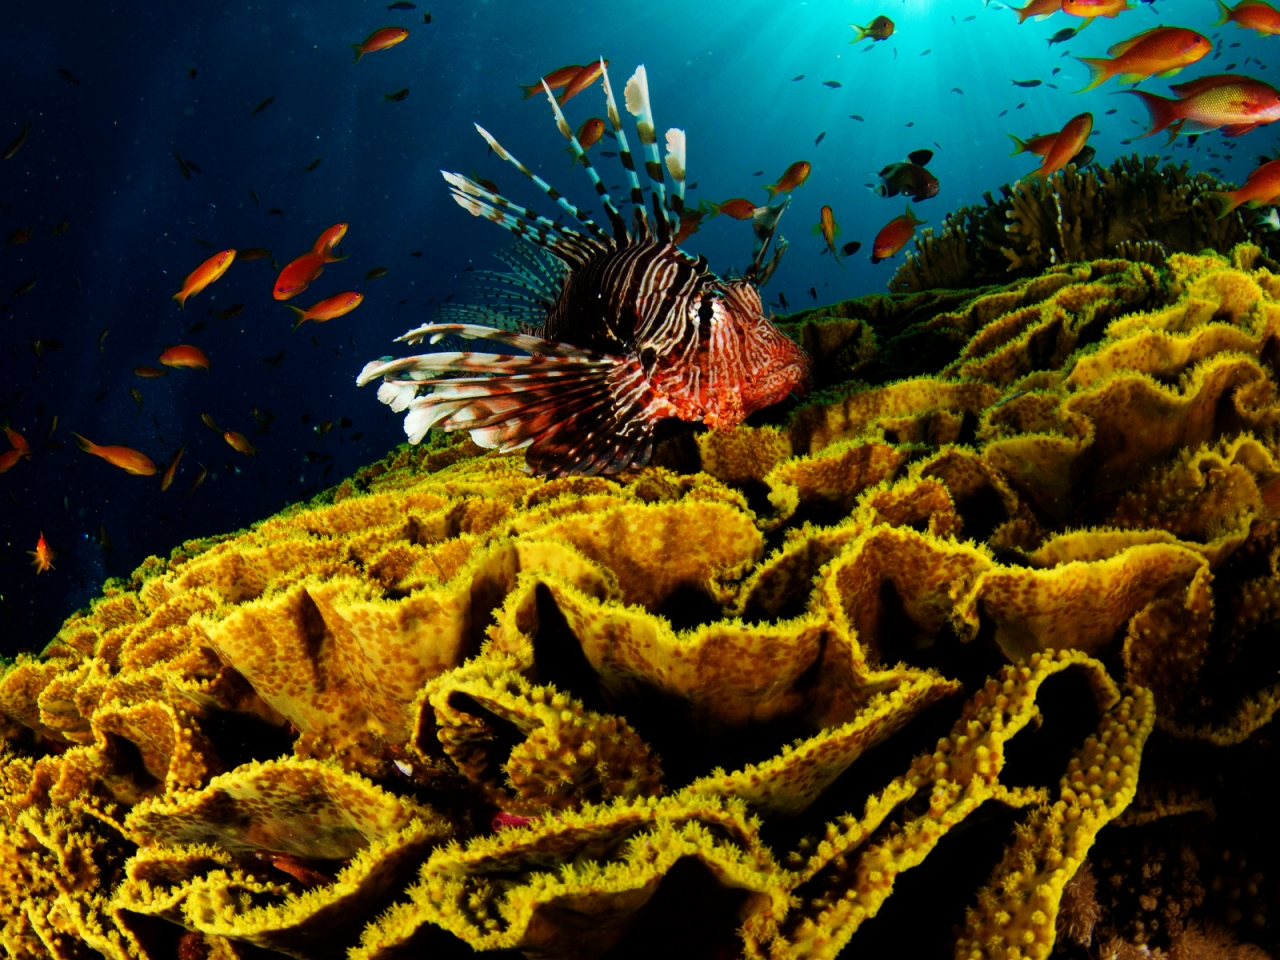 Underwater World Activity for 1280 x 960 resolution